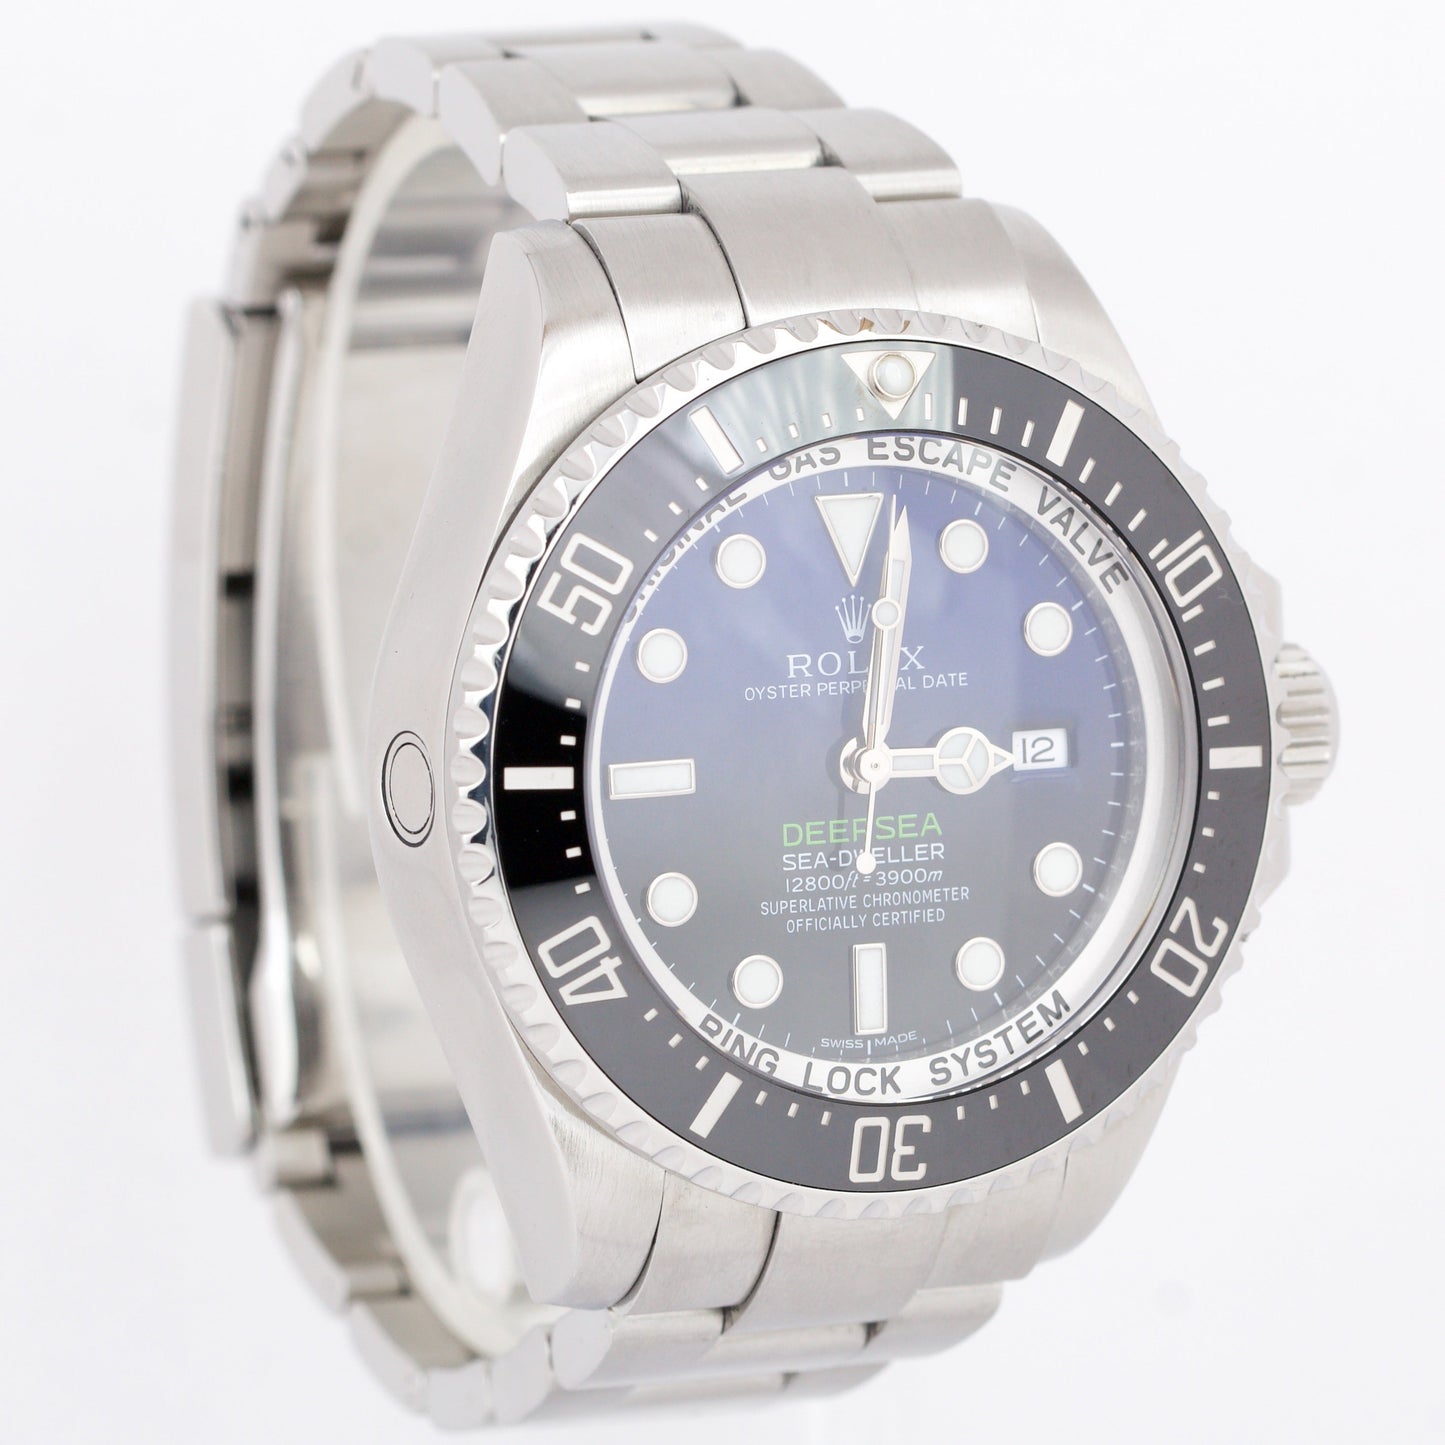 Rolex Sea-Dweller Deepsea 'James Cameron' Blue Stainless 116660 44mm Watch BOX